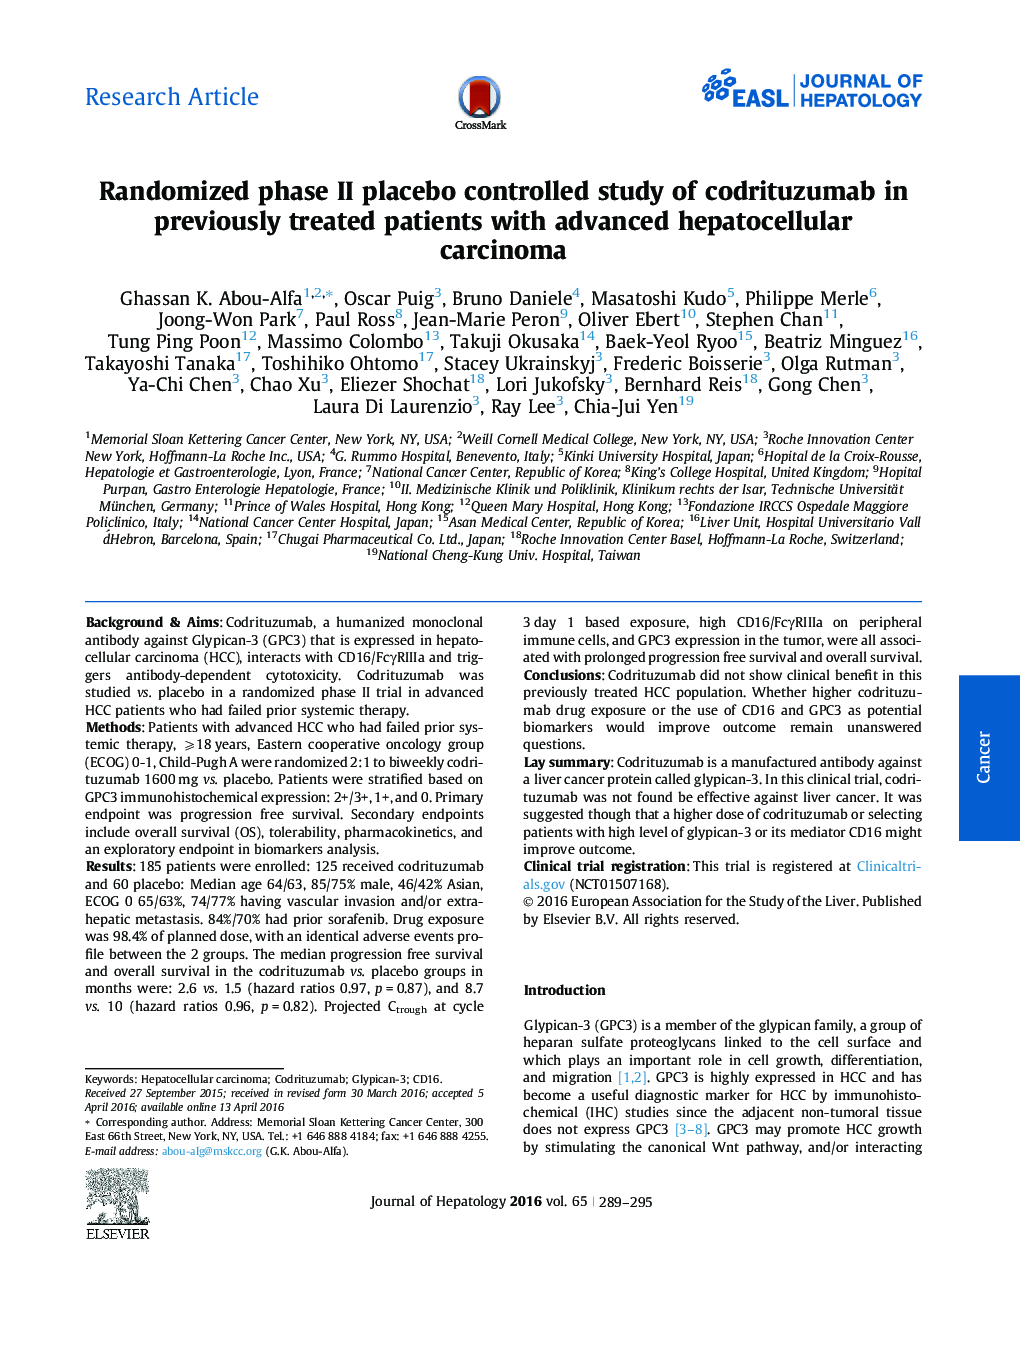 مطالعه تصادفی فاز II دارونما تحت کنترل از codrituzumab در بیماران مبتلا به کارسینوم پیشرفته کبدی که قبلا درمان شده اند